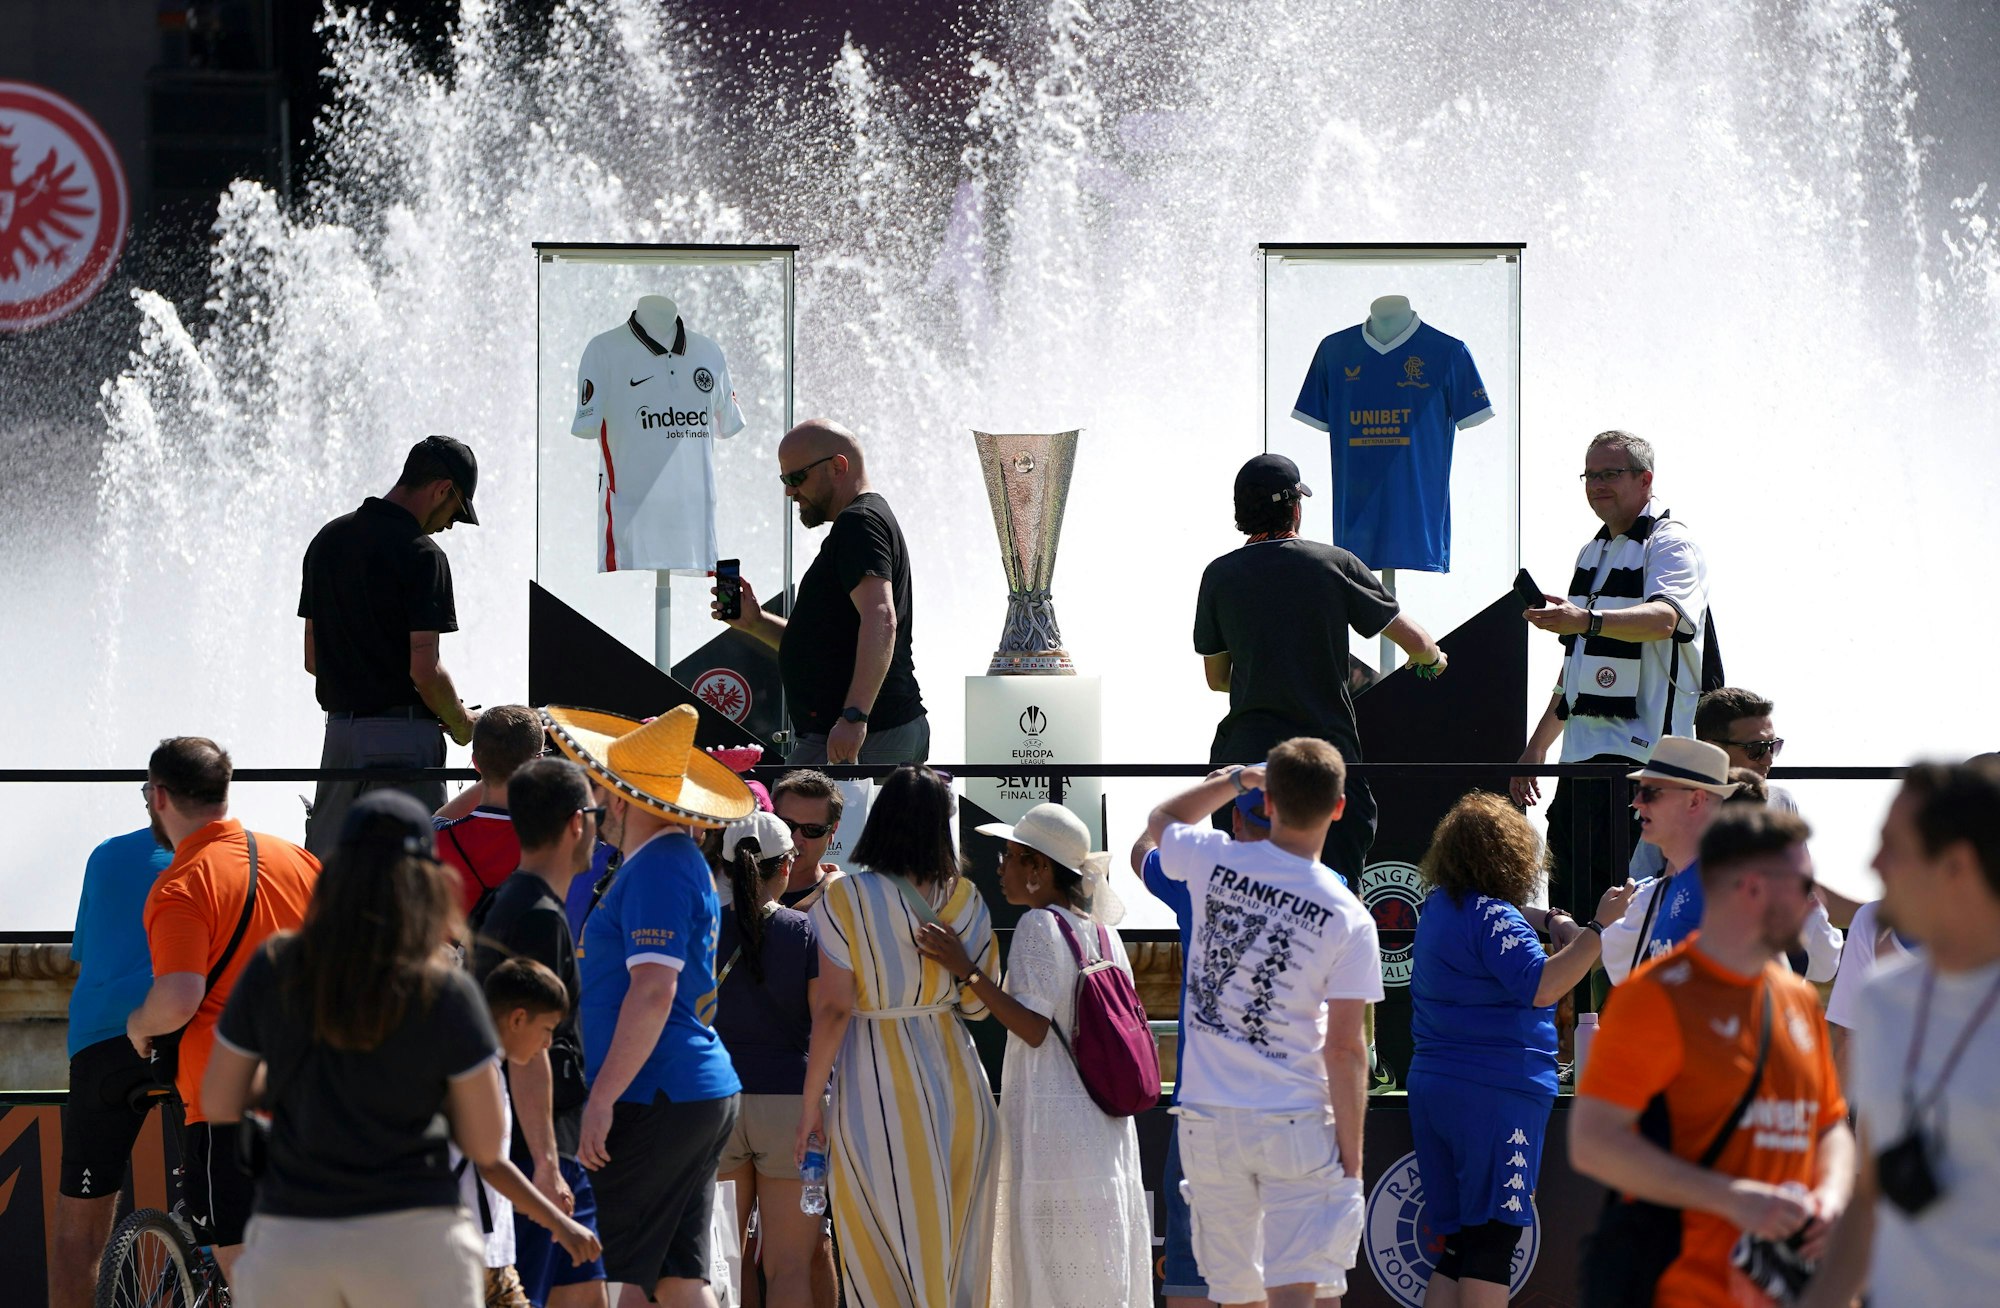 Der Pokal der Europa League neben den Trikots von Eintracht Frankfurt und den Glasgow Rangers an der Plaza de España in Sevilla.